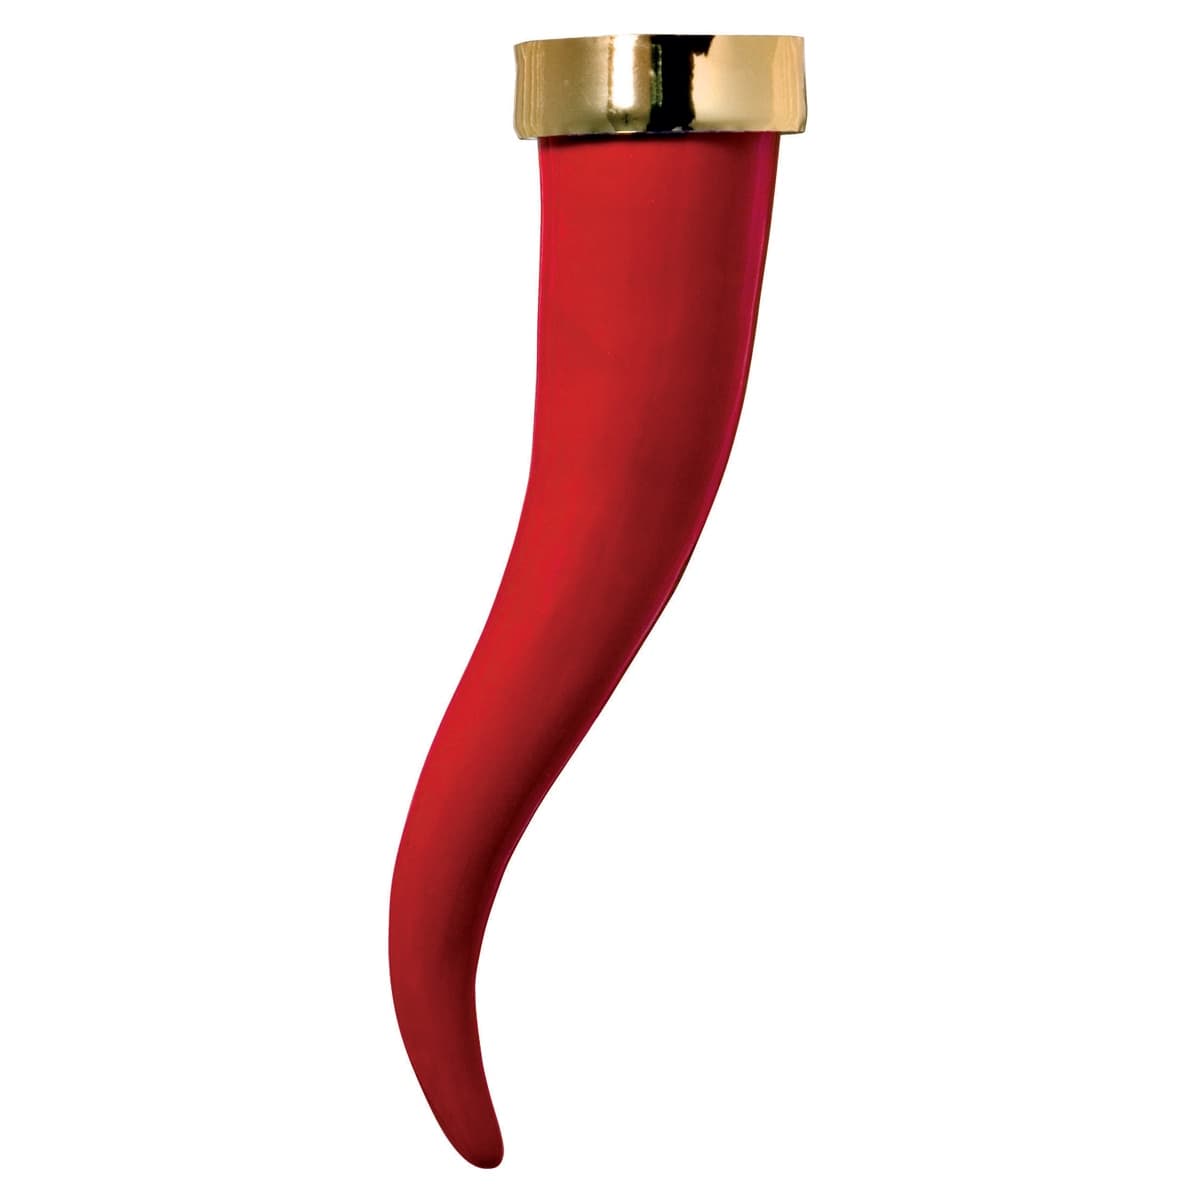 Umidificatore per termosifone in ceramica a forma di corno portafortuna di colore rosso